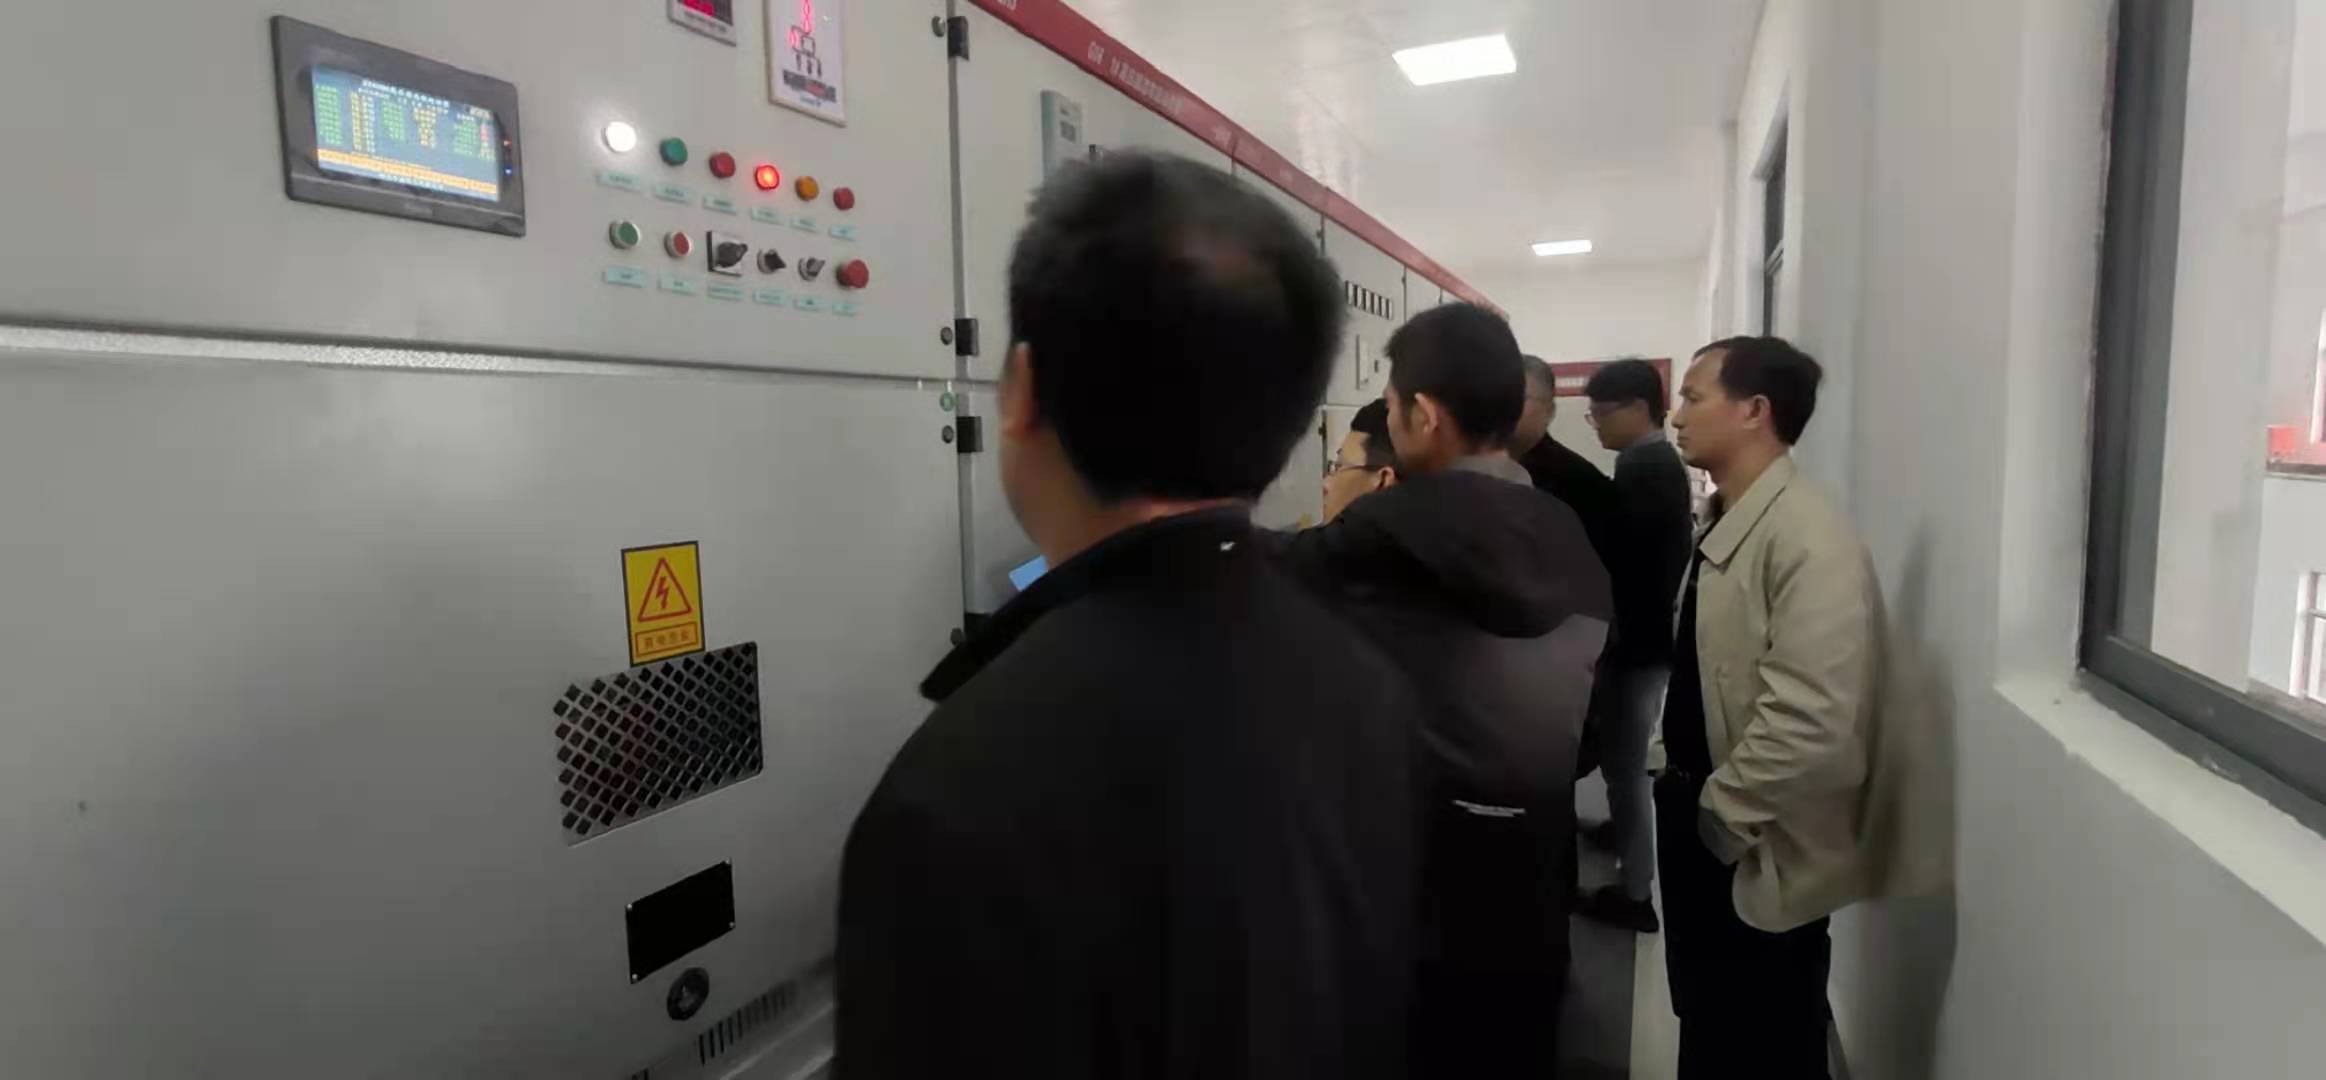 黑龙江高压固态软启动柜厂